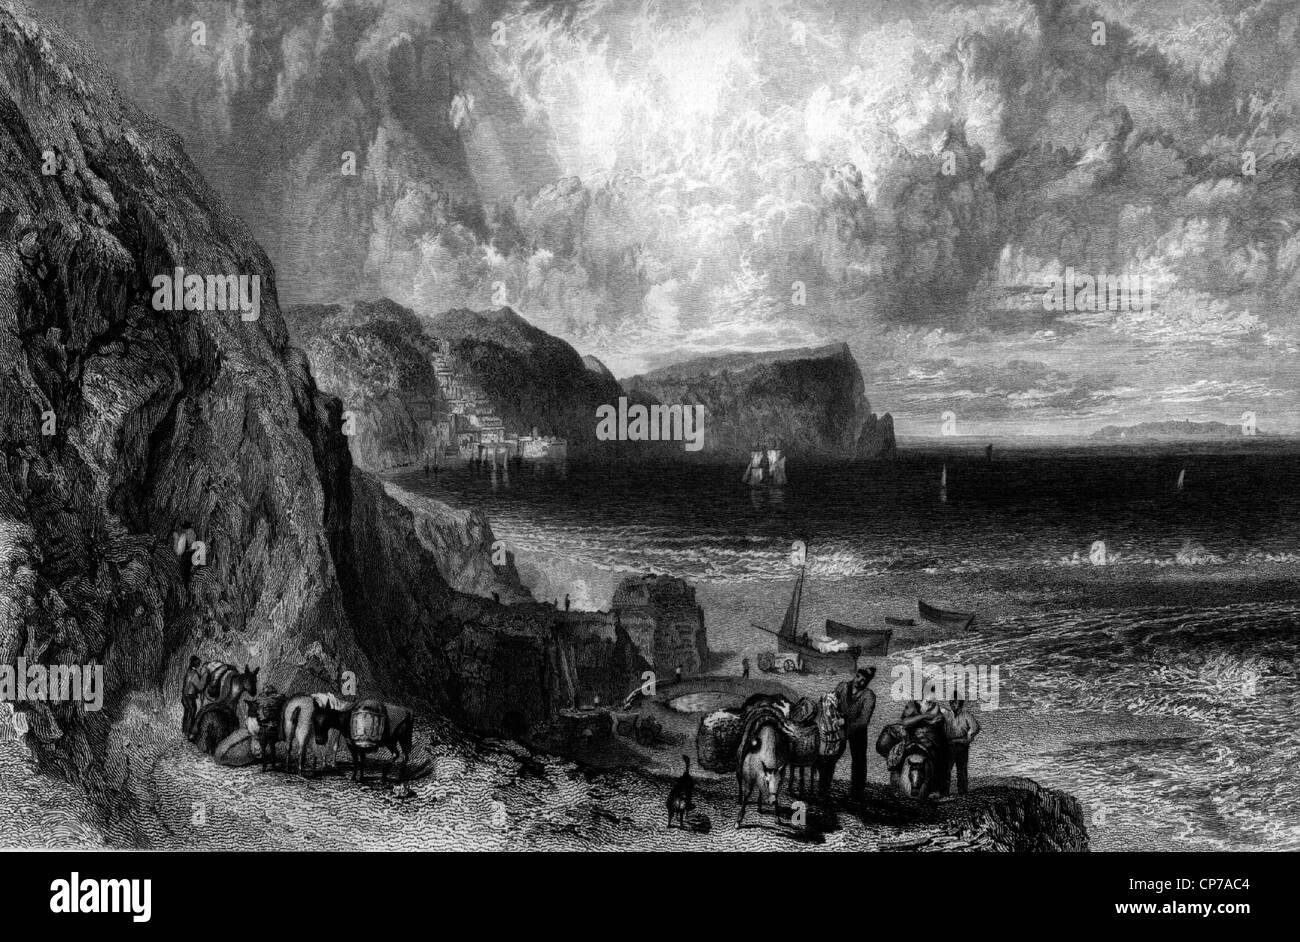 Gravure de la baie de Clovelly, Devon, Angleterre. Gravée par William Miller après J M W Turner. Banque D'Images